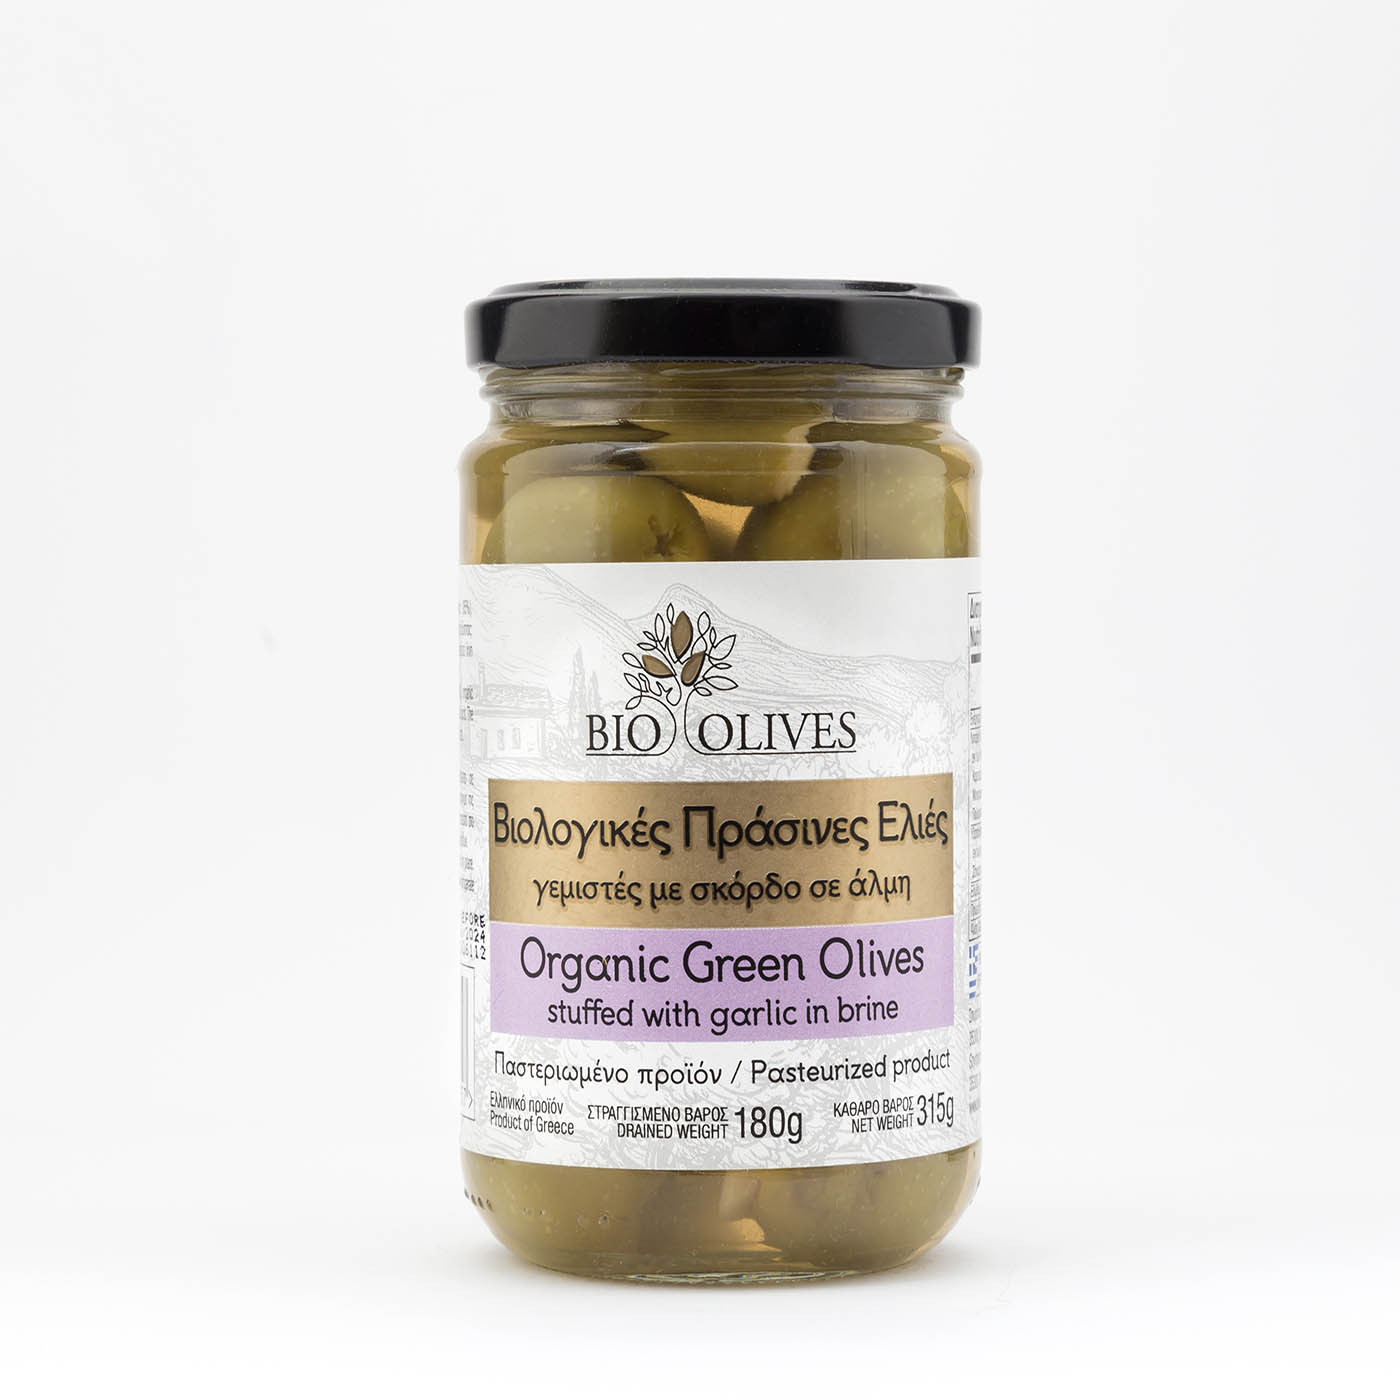 Βιολογικές πράσινες ελιές γεμιστές με σκόρδο σε άλμη "Bio olives" 180g